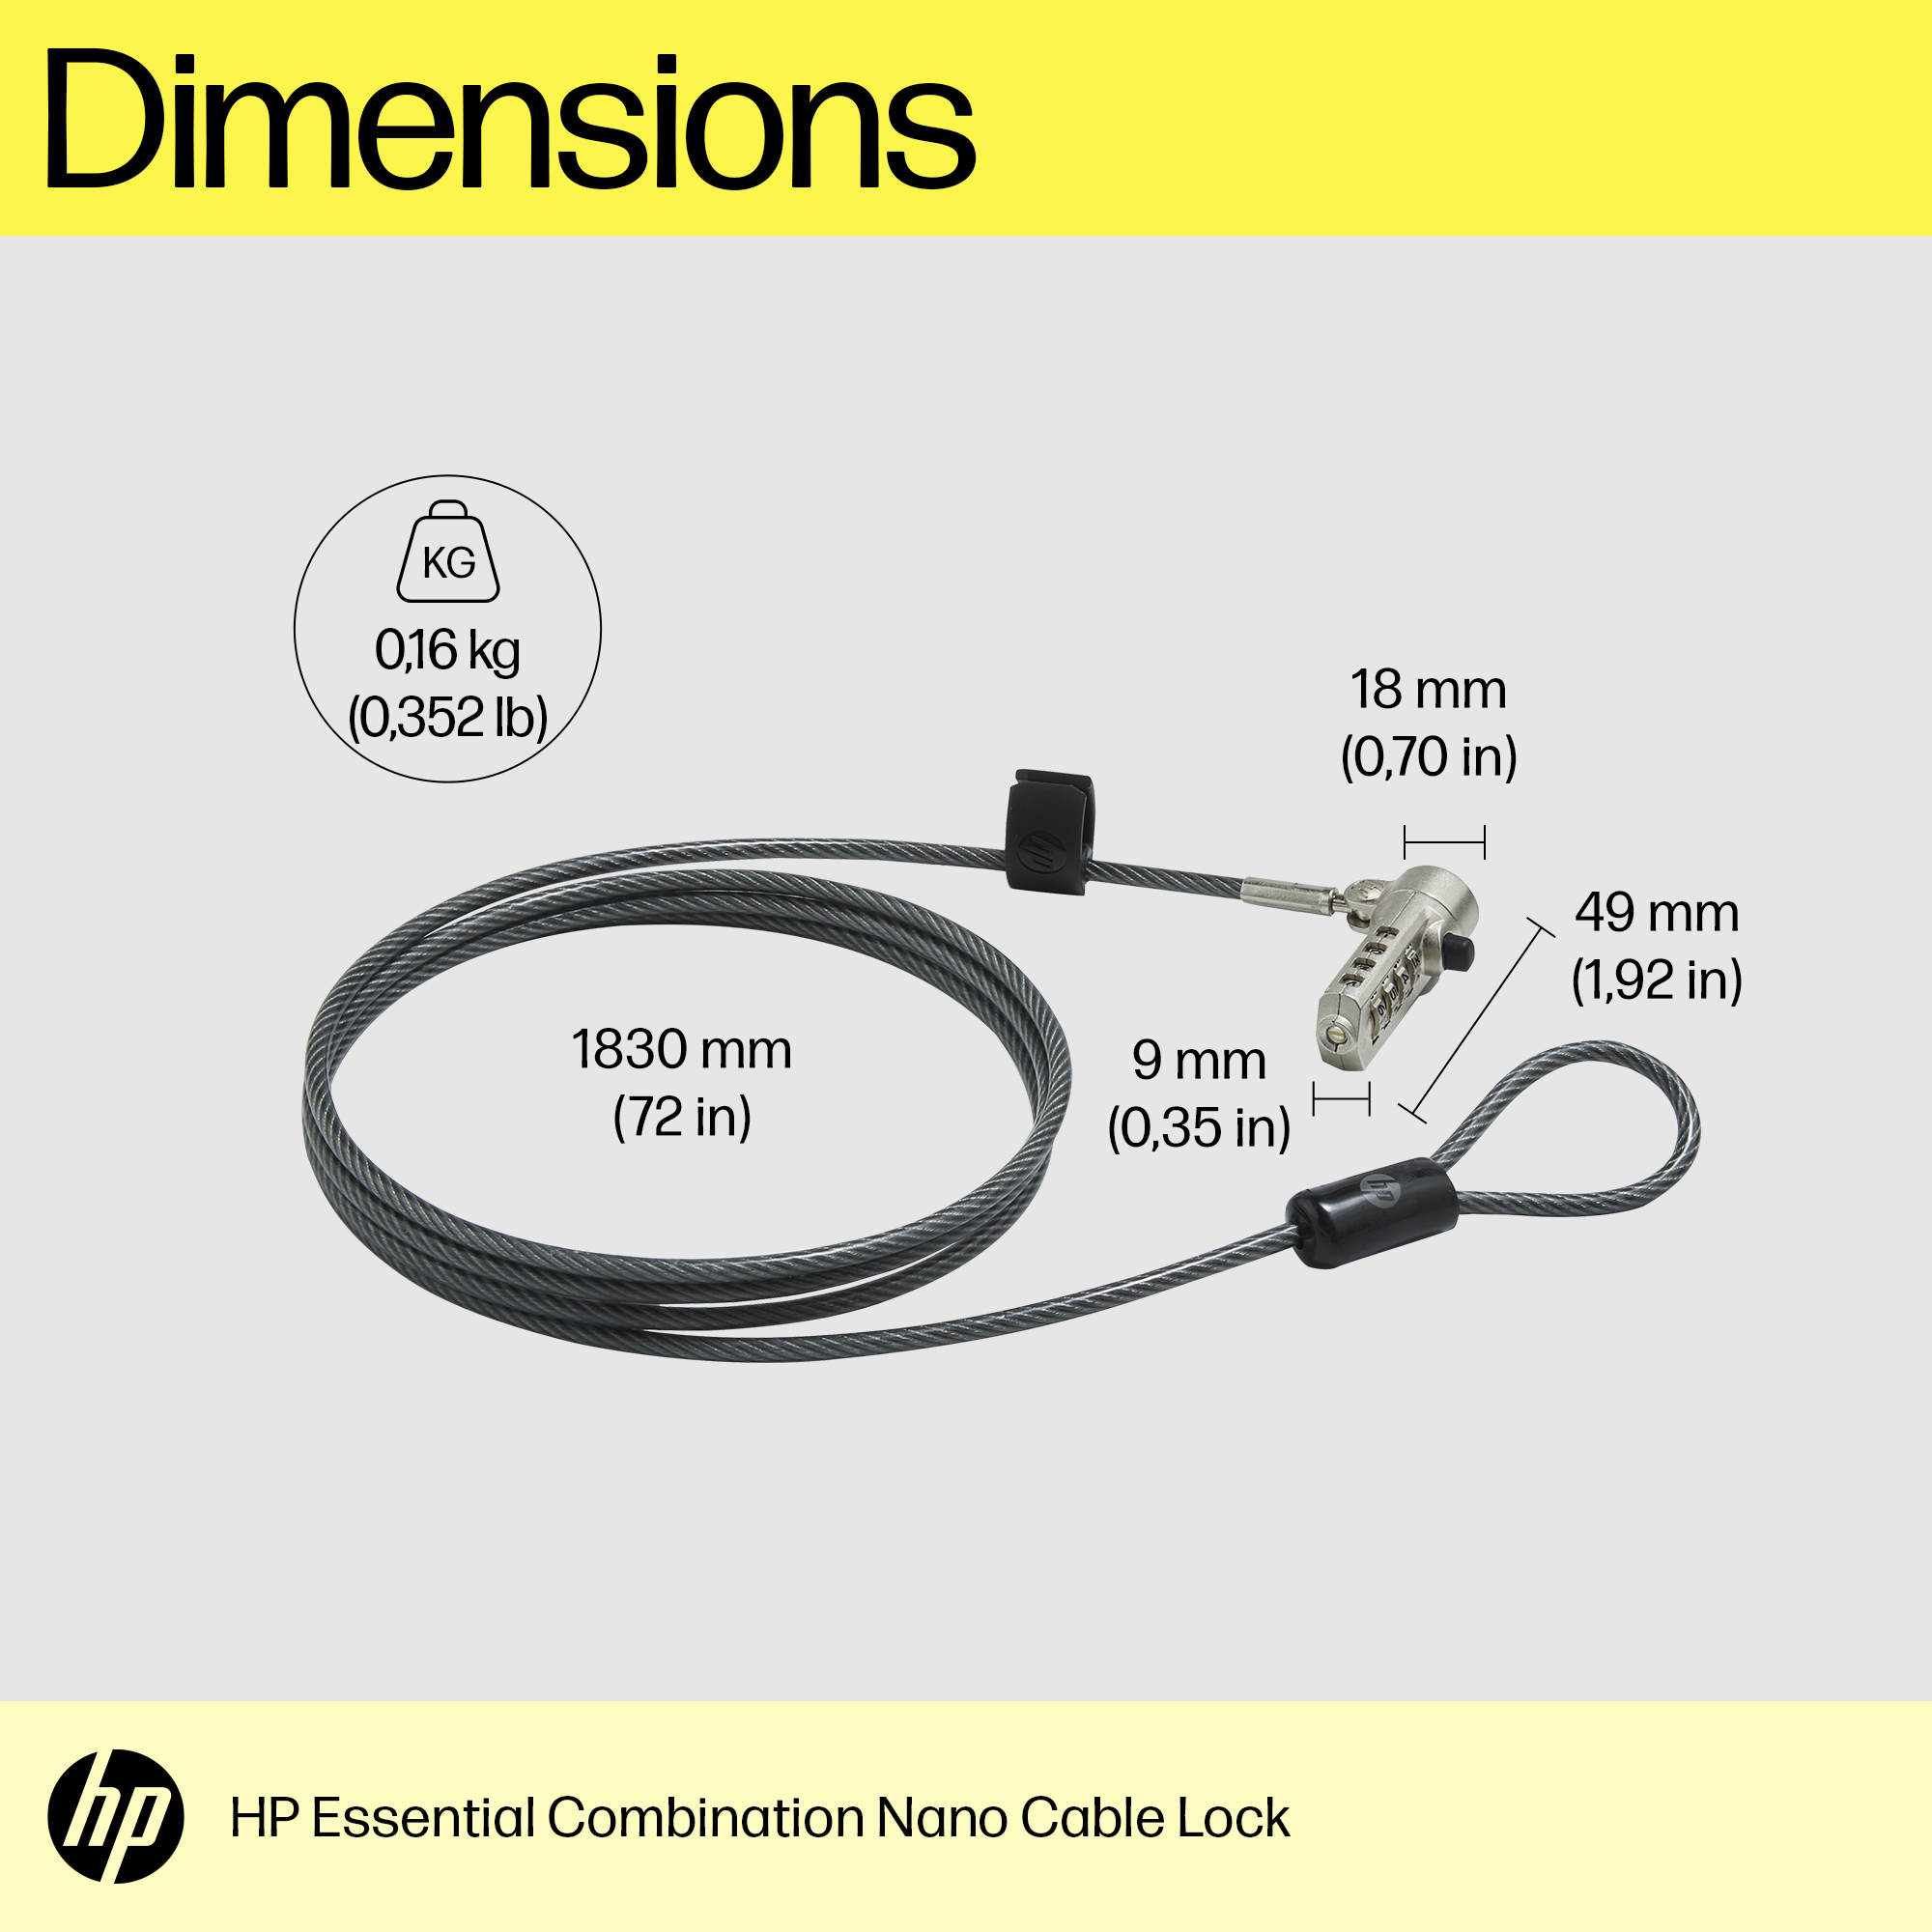 HP ESSENTIAL NANO COMBINATION CABLE LOCK